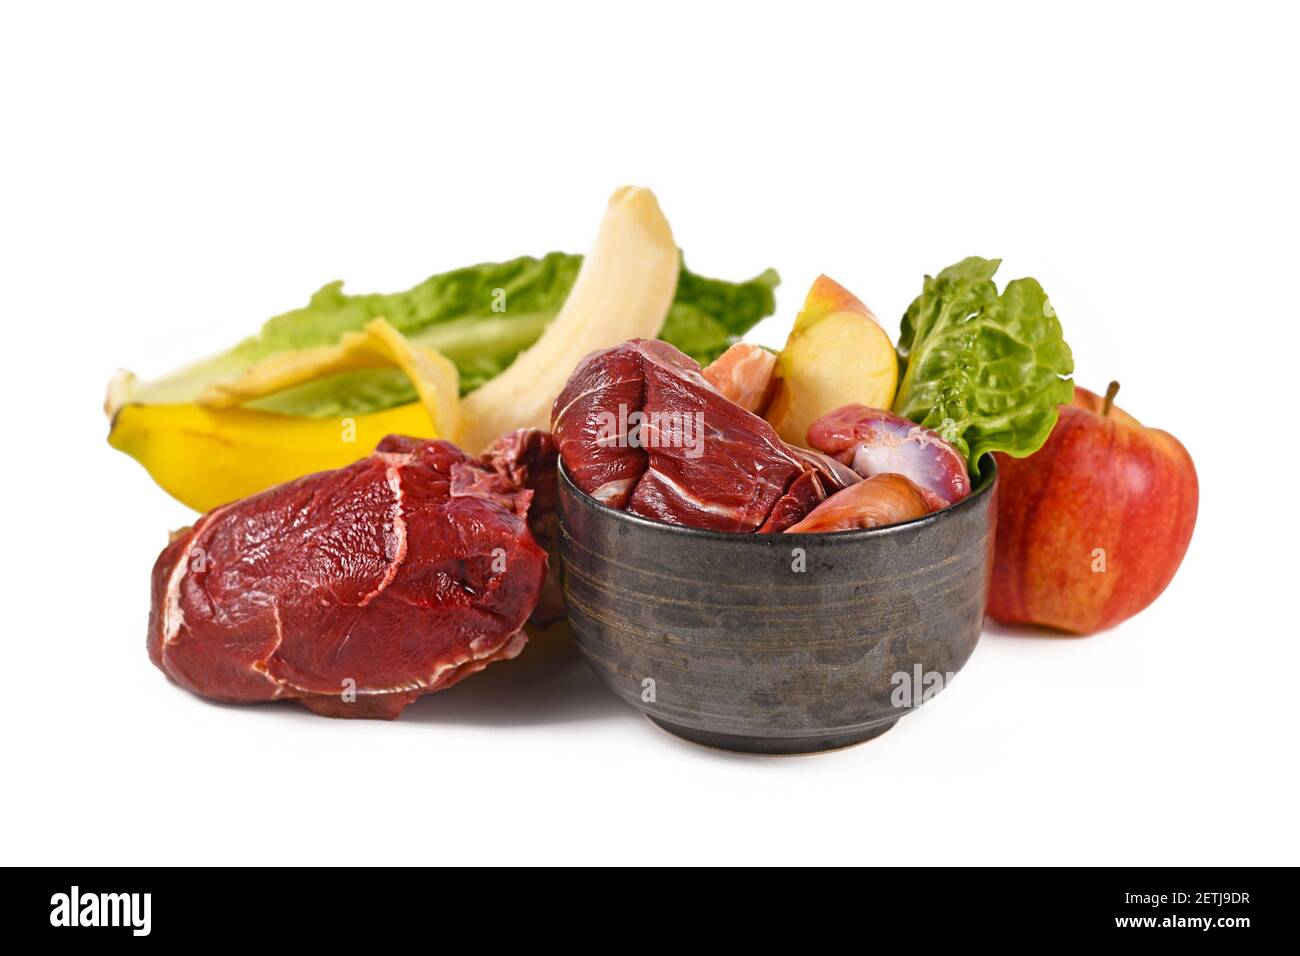 Bol pour chien rempli d'aliments crus biologiquement appropriés contenant des morceaux de viande, des fruits et des légumes entourés d'ingrédients sur fond blanc Banque D'Images